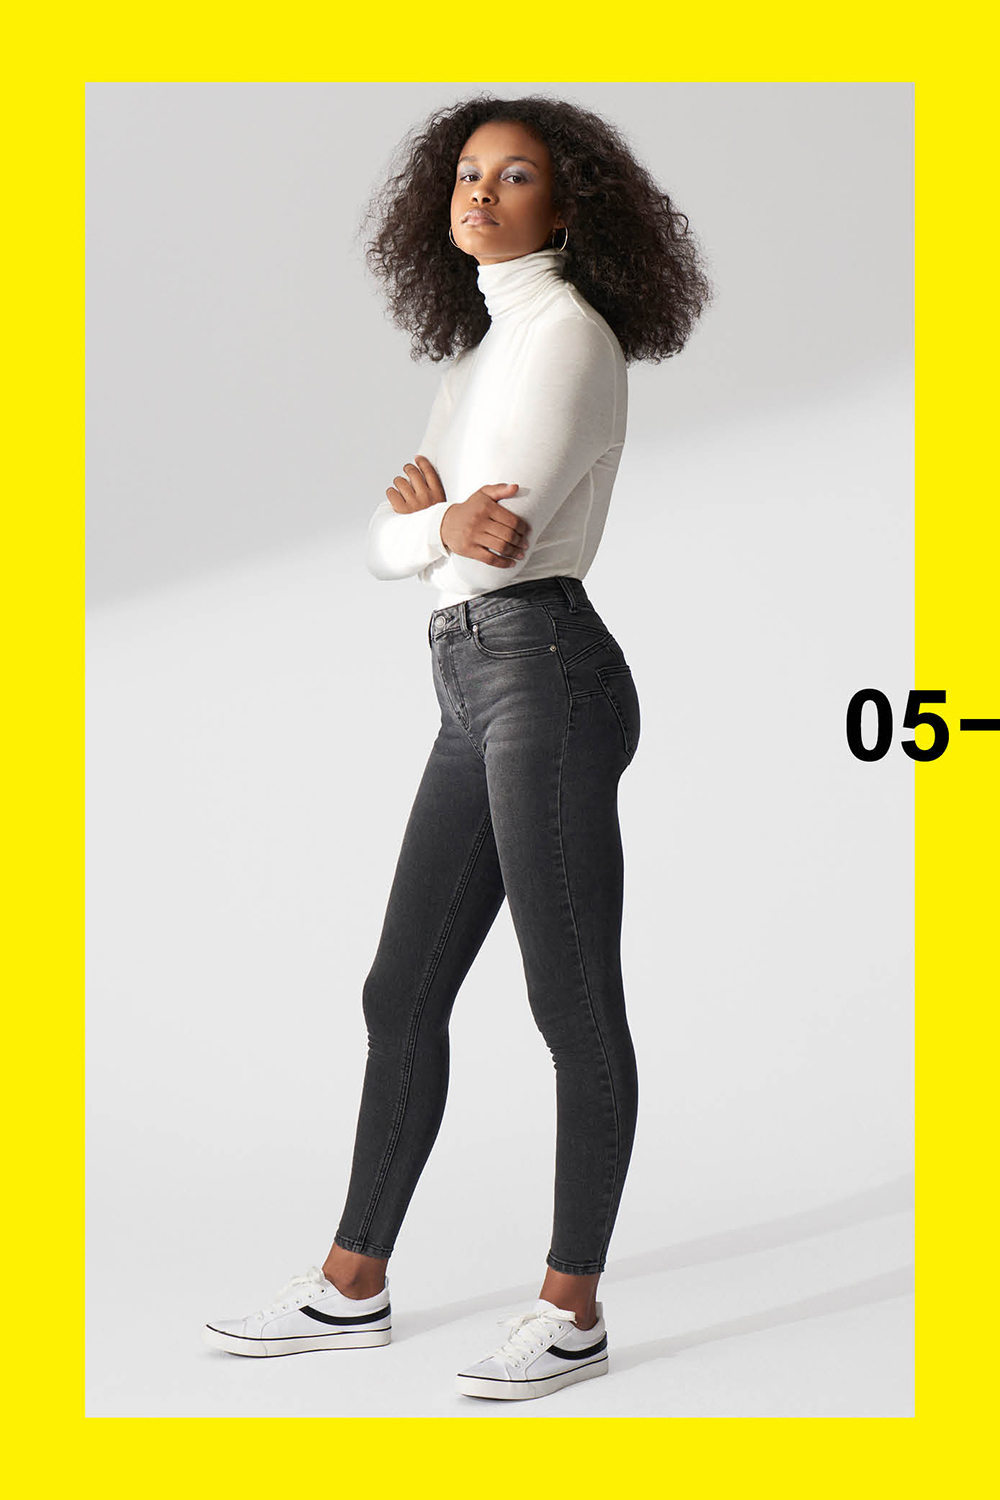 Pantalones Primark colección mujer, los que mejor te sientan tu cuerpo estilo - Modalia.es